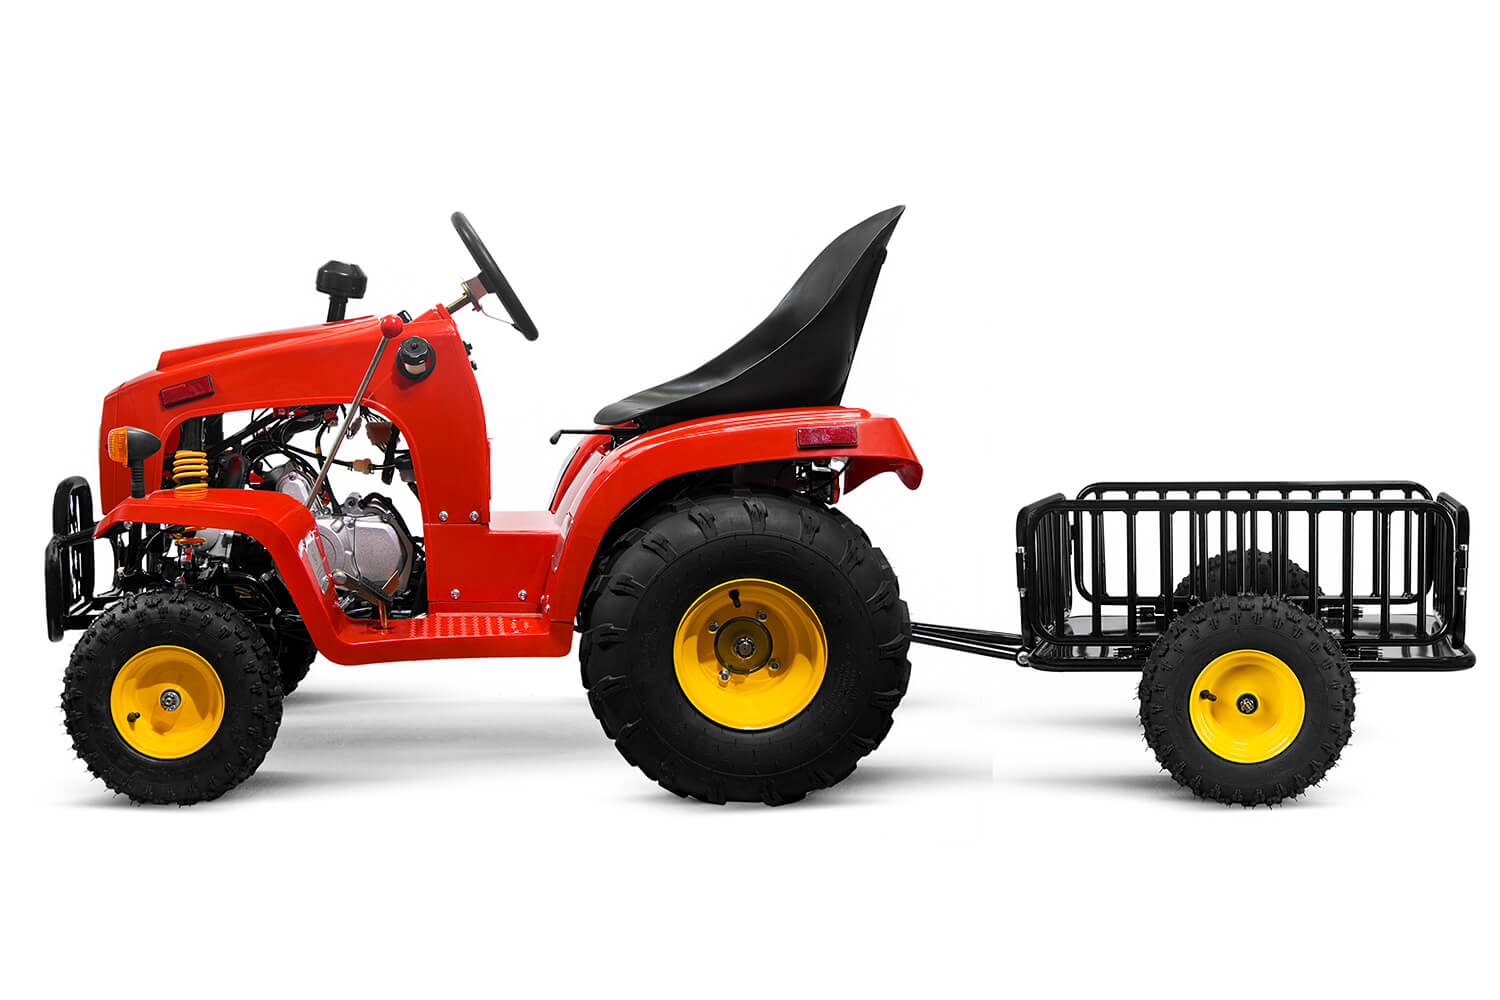 Tracteur enfant 110cc 3 vitesses automatiques avec remorque rouge